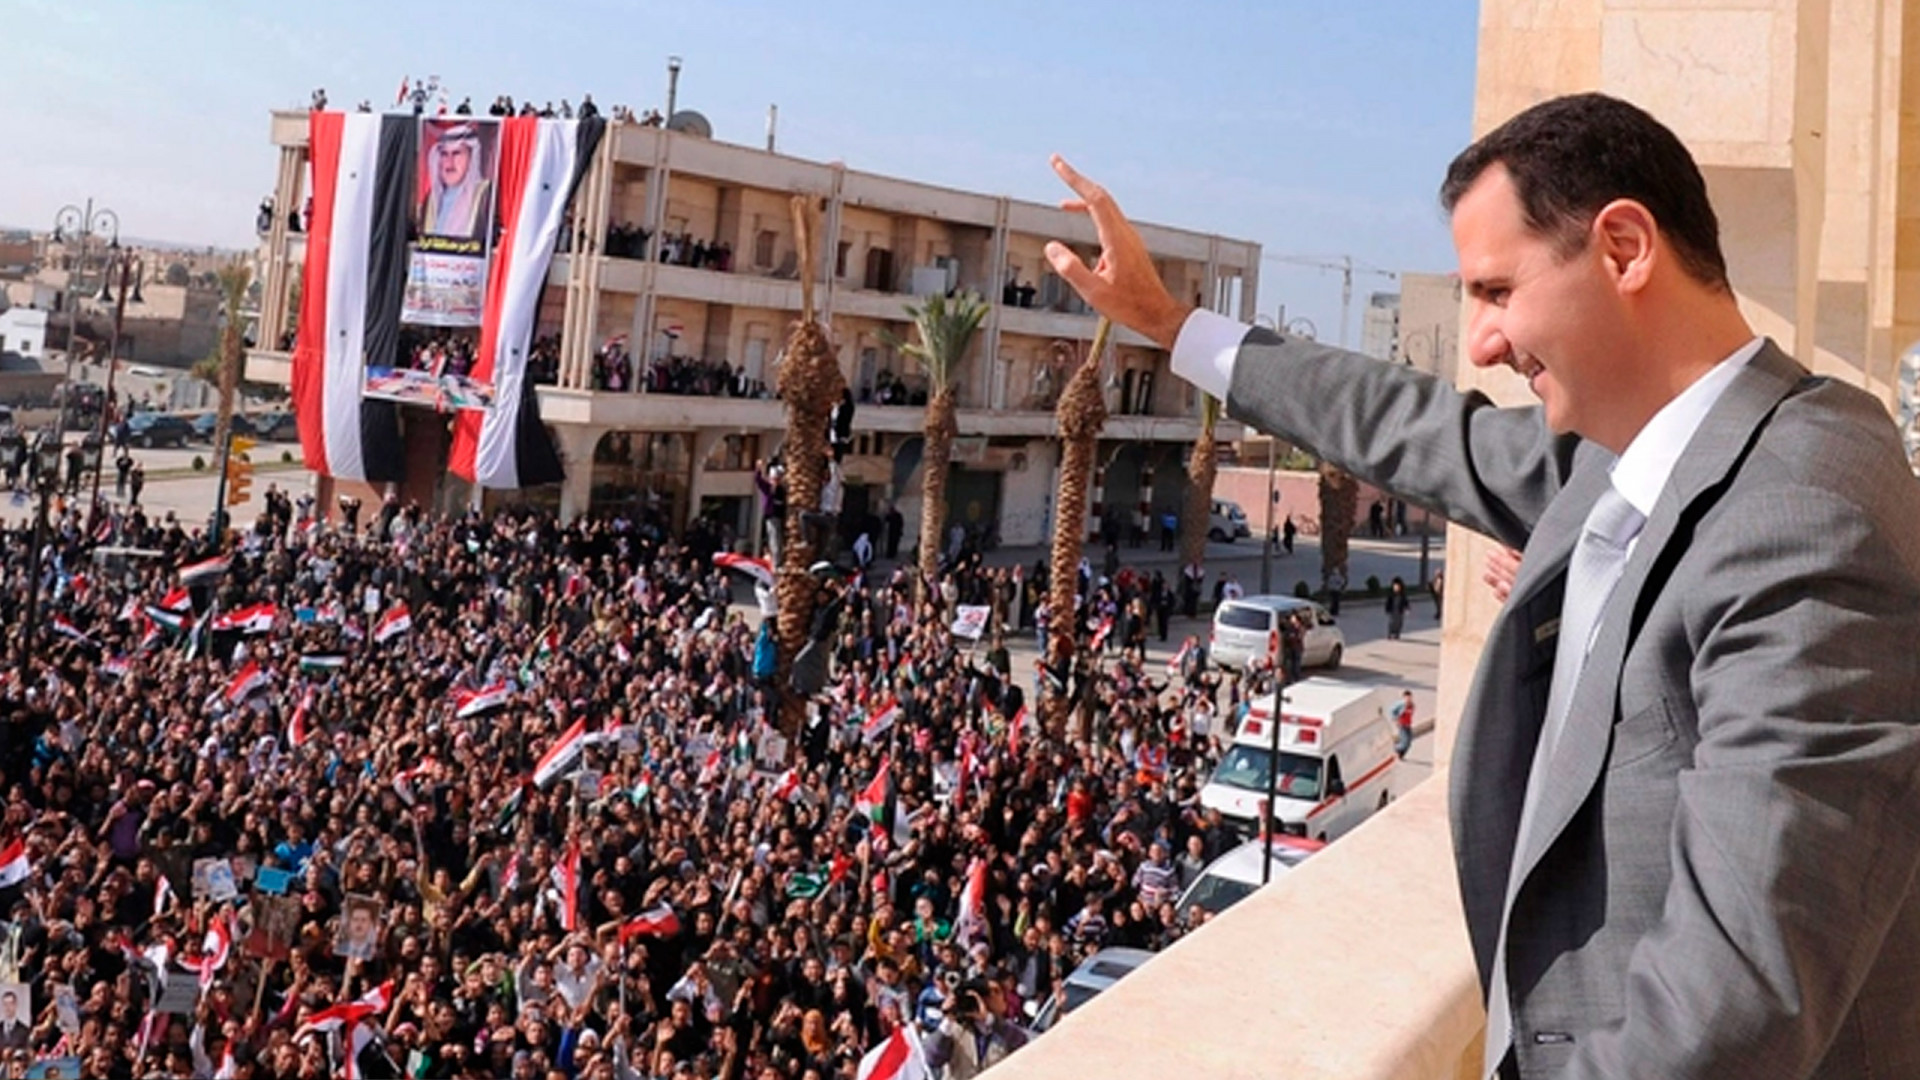 Al Assad: La guerra en Siria demostró que Occidente no cambia y busca subordinar a quienes no cumplan sus condiciones